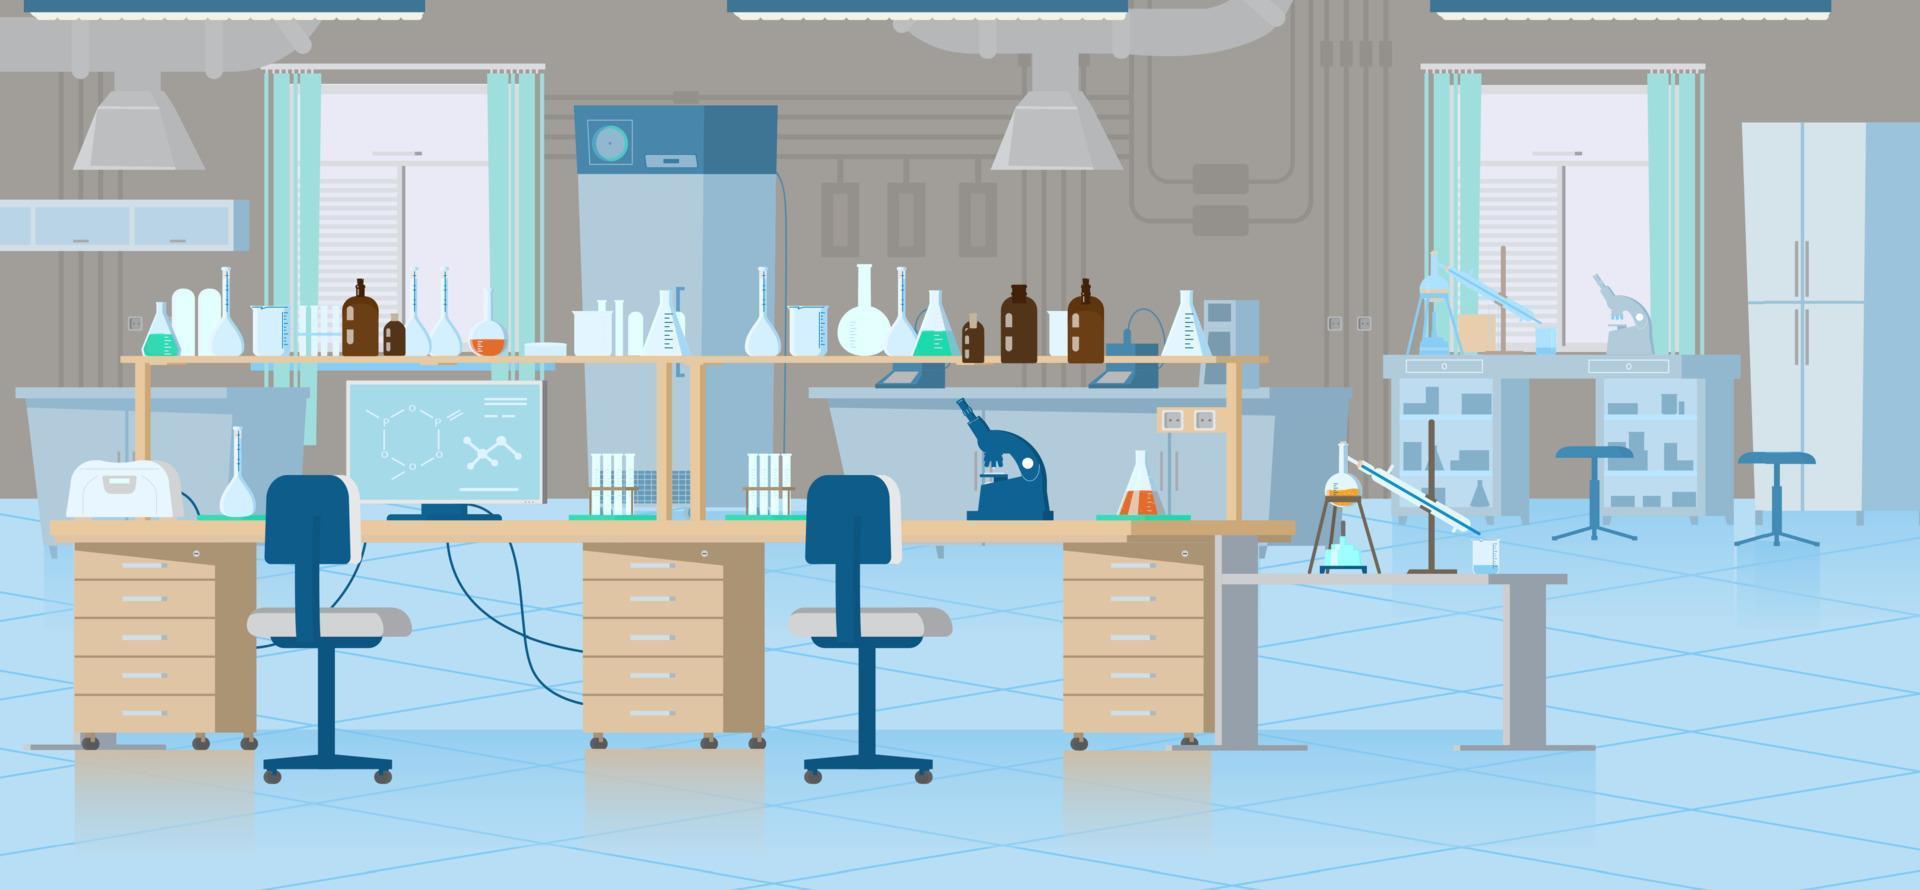 vector chemisch laboratorium interieur met apparatuur. werkplaats met kolven, reagentia, microscoop, computer enz. vlak illustratie.